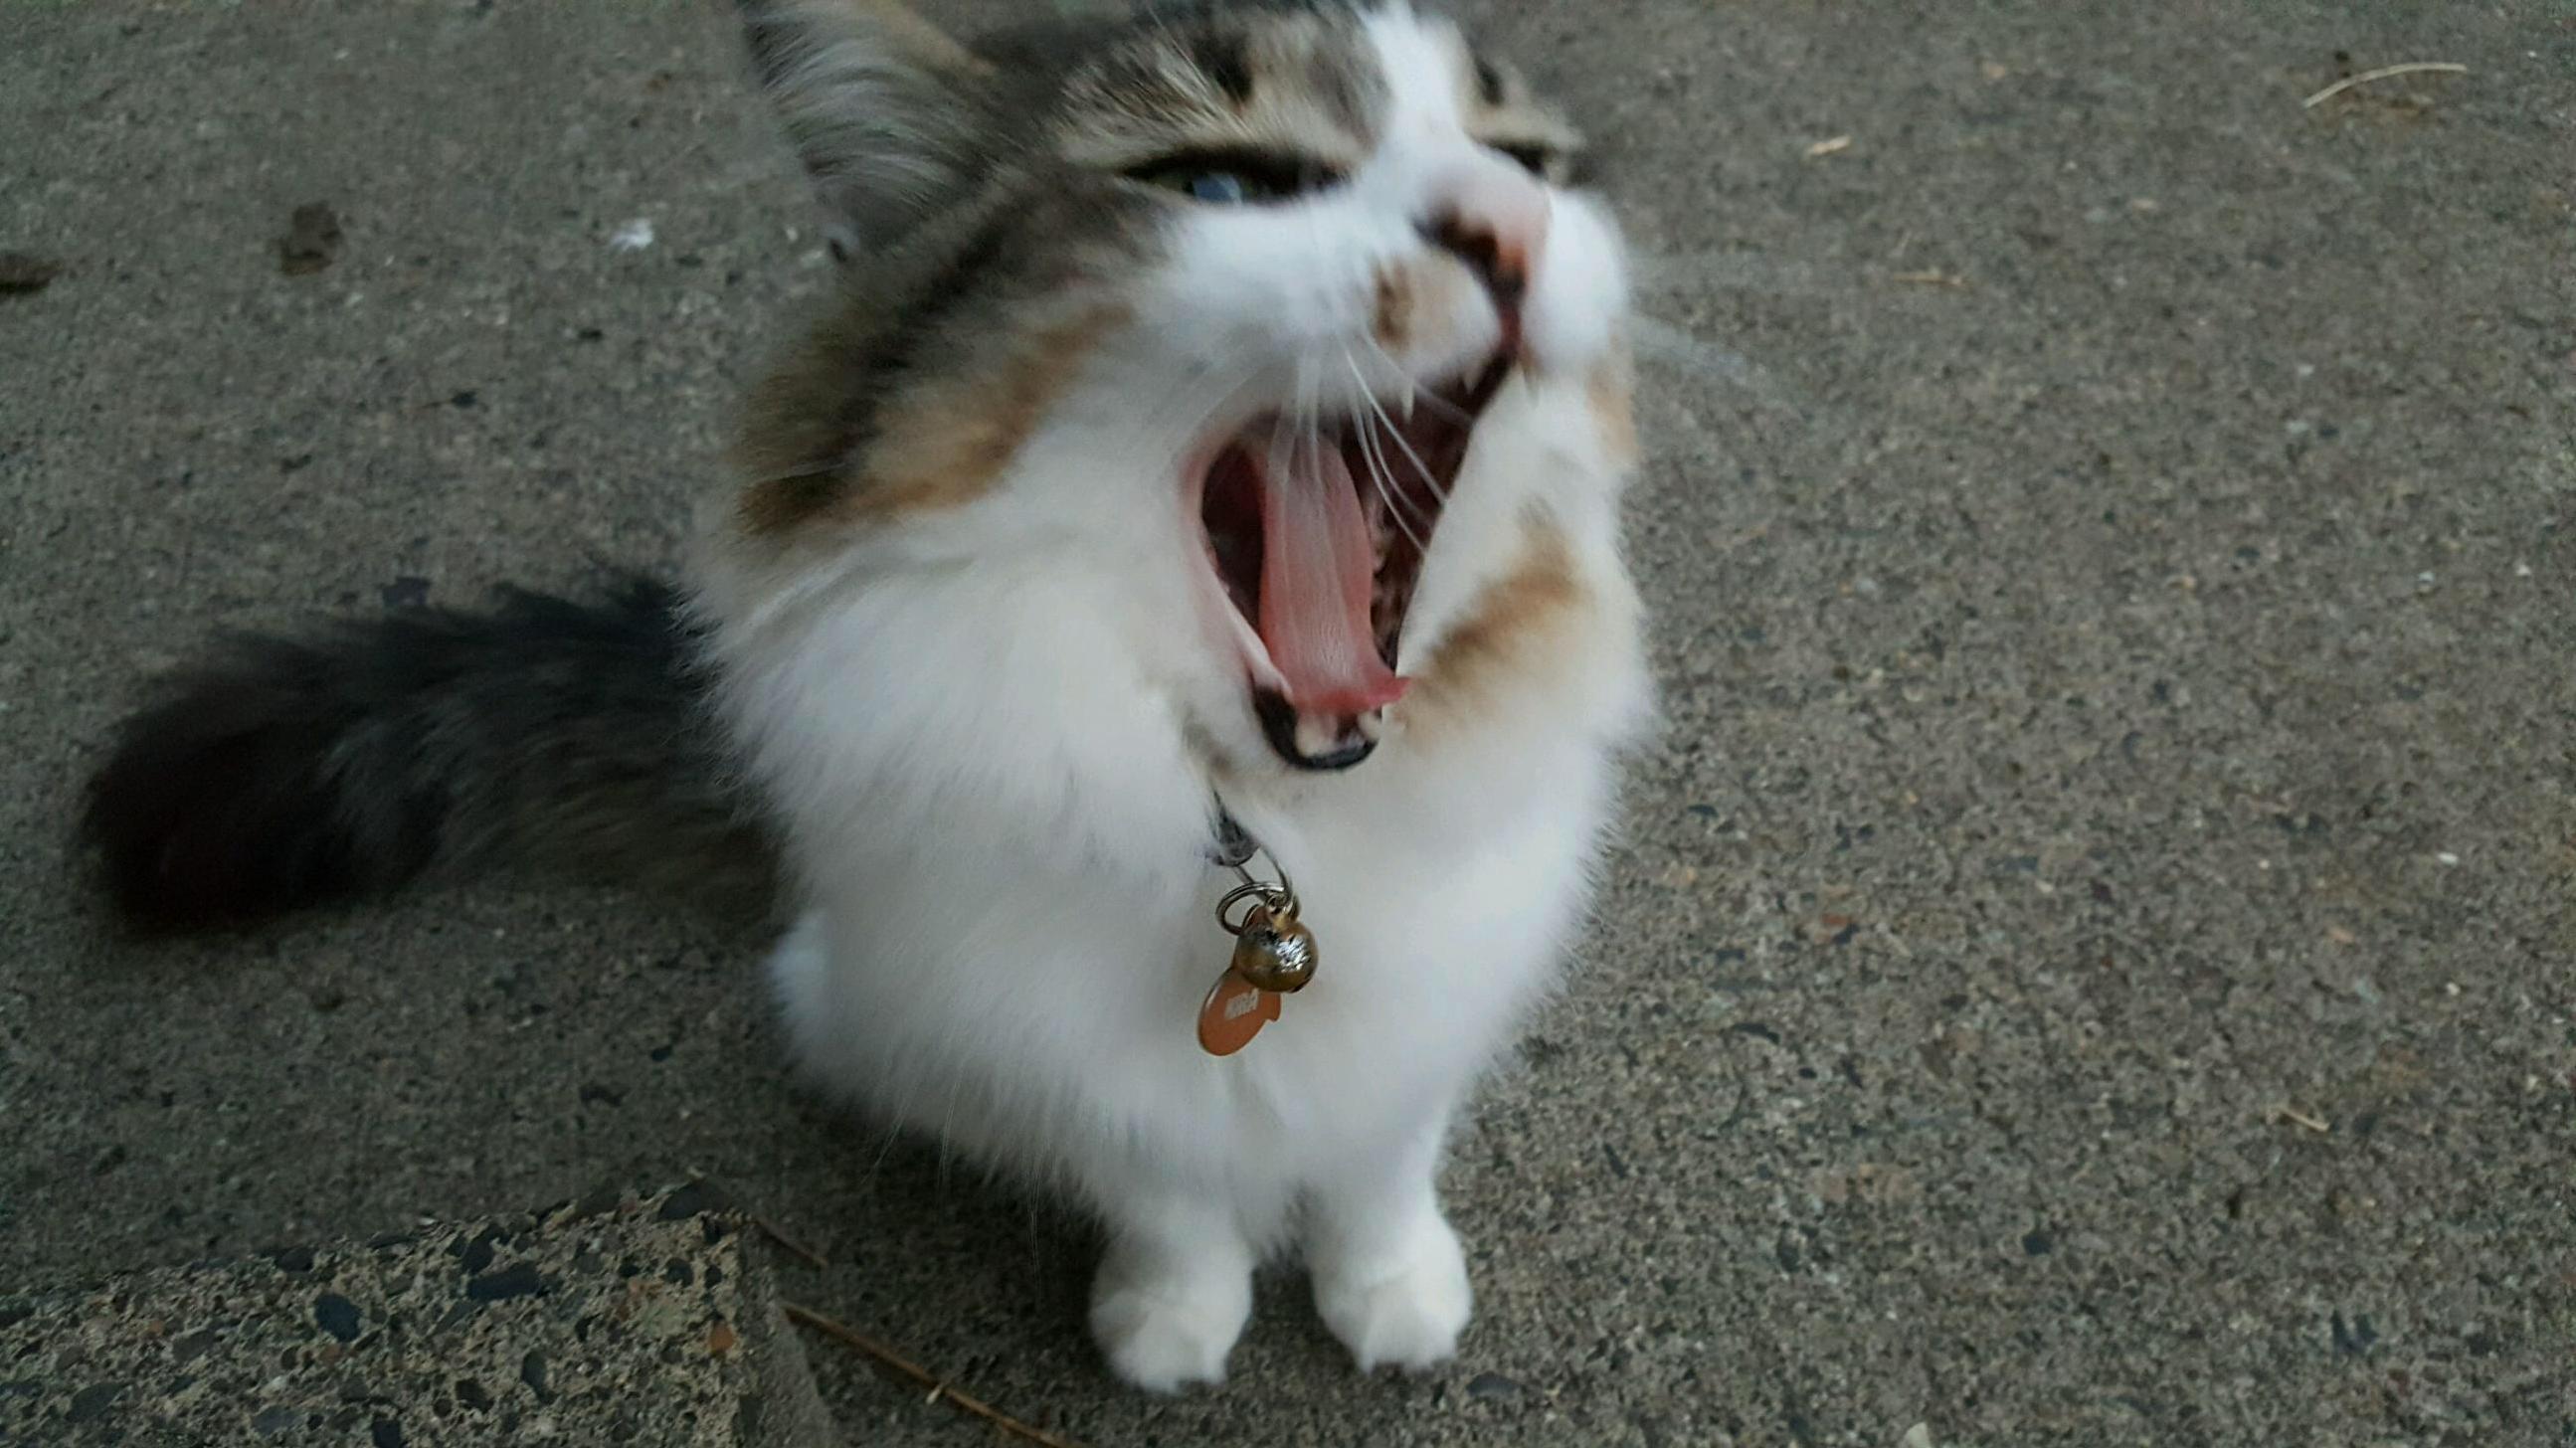 Her roar is fierce